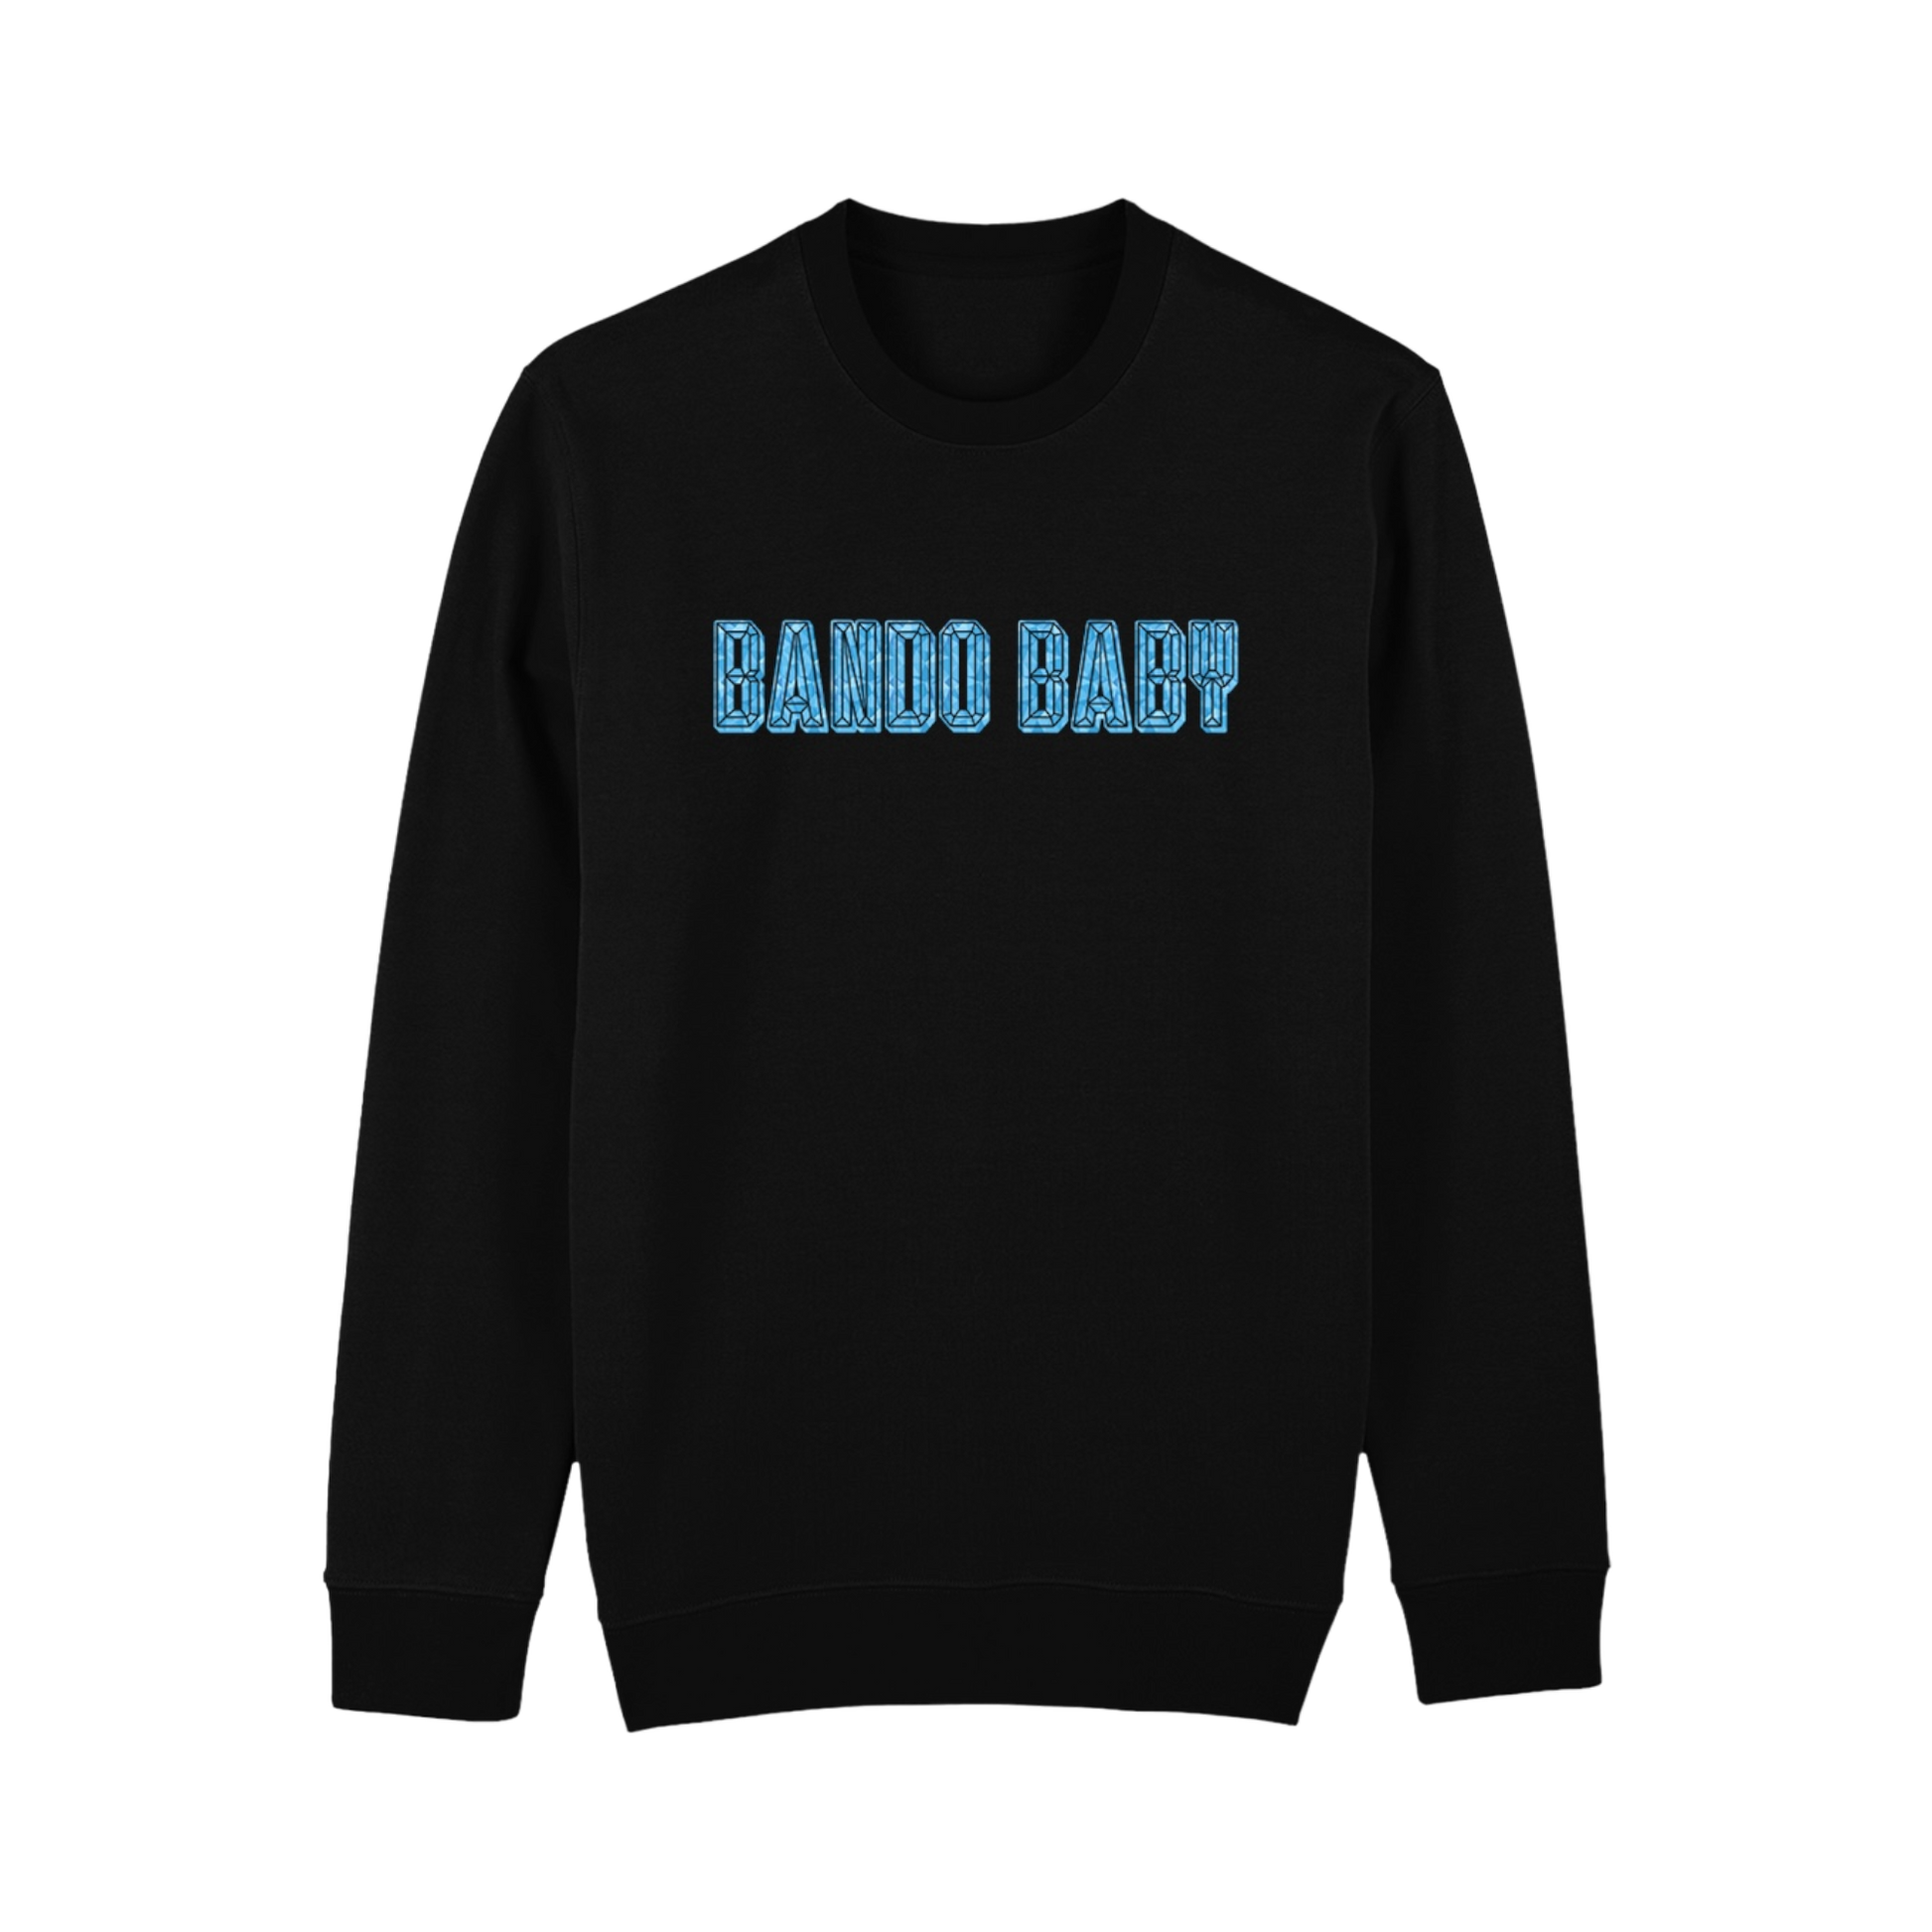 Never Give Up Sweatshirt - Bando Baby 